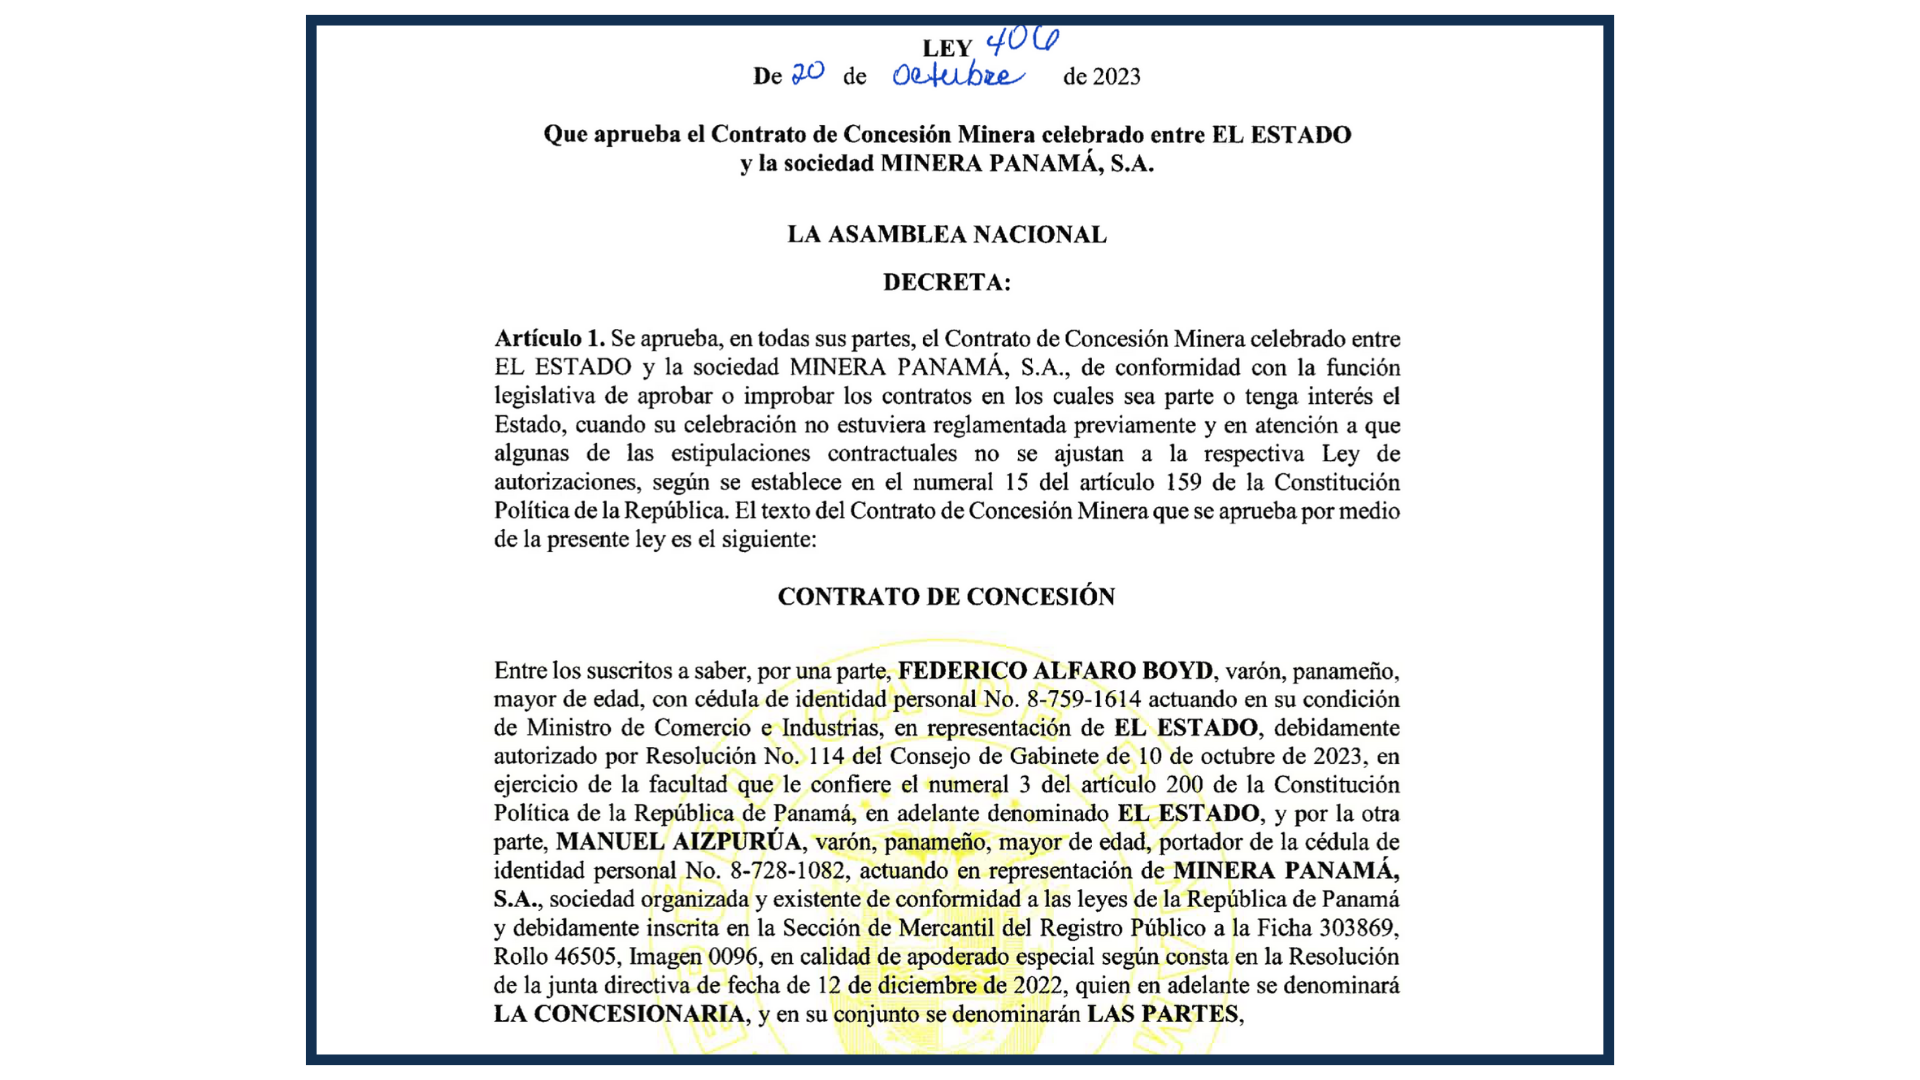 Ley 406 que aprueba Contrato de Concesión Minera, está publicada en Gaceta Oficial Digital